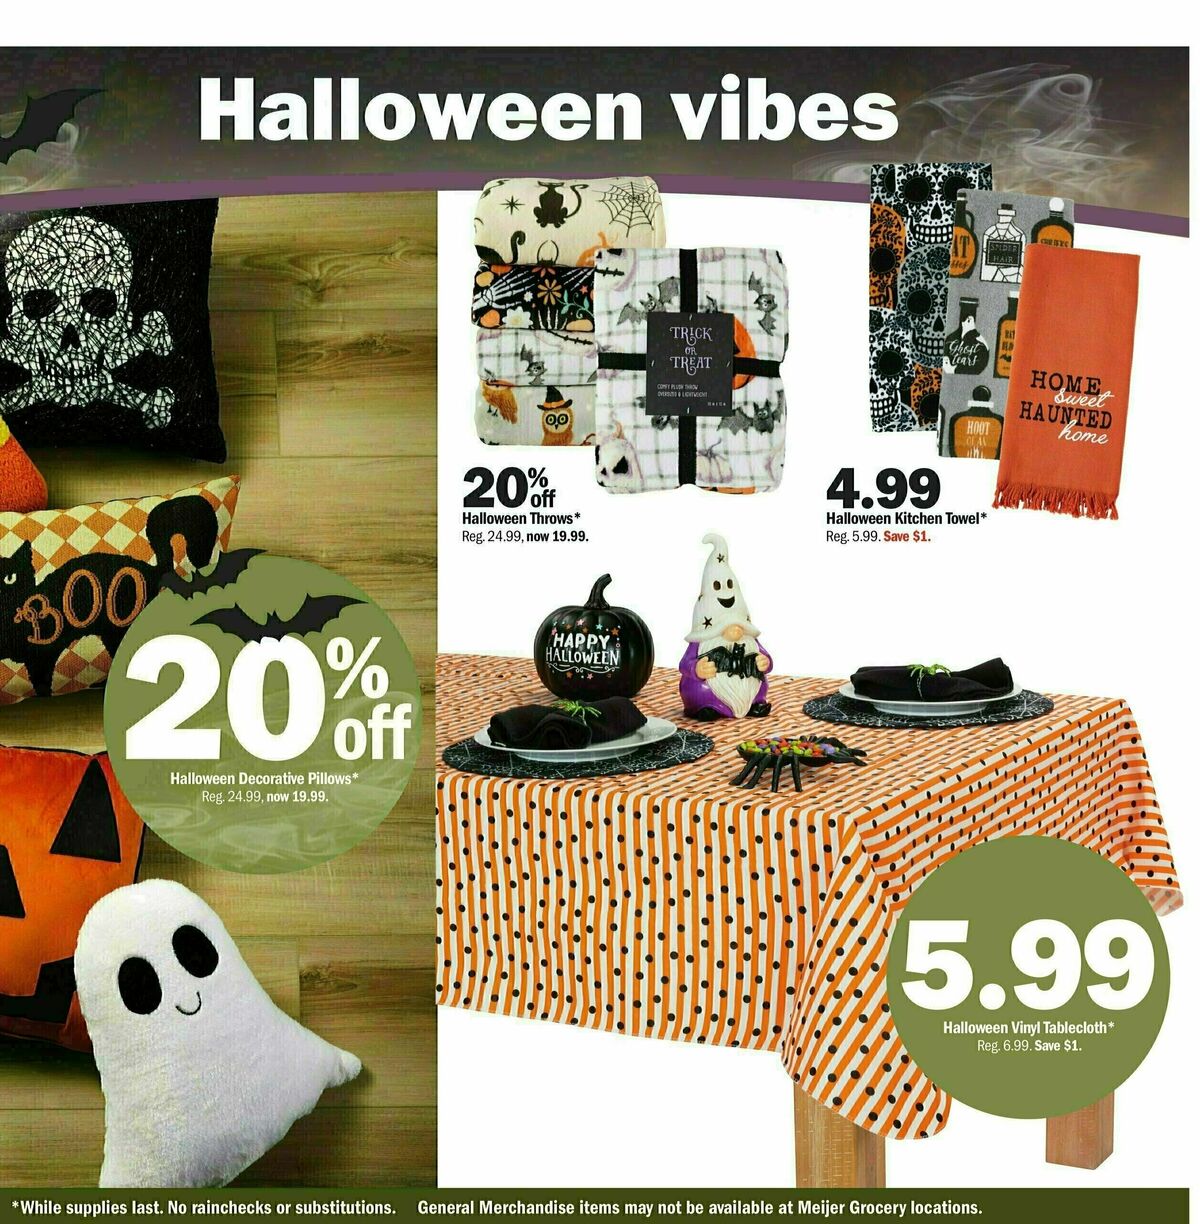 Meijer Halloween Weekly Ad from October 1